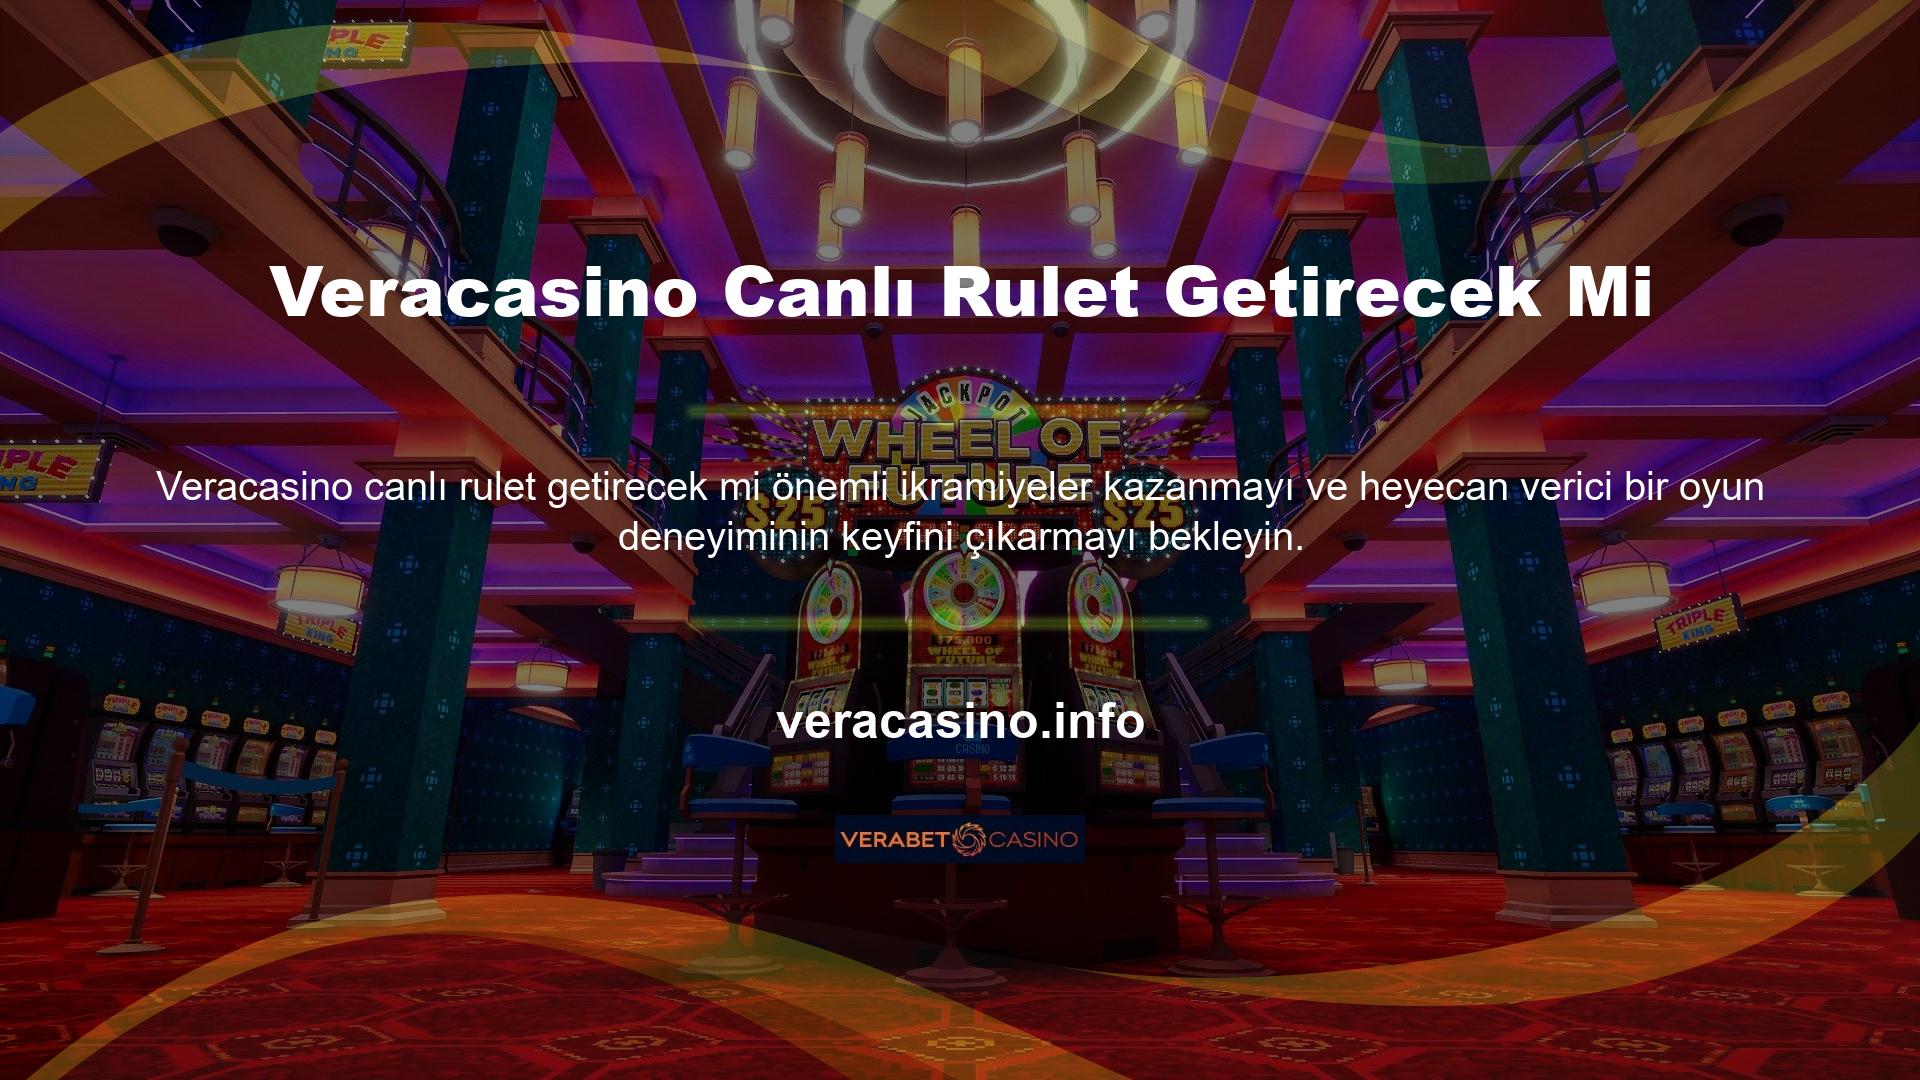 Veracasino, çevrimiçi platformu aracılığıyla eksiksiz bir casino deneyimi sunuyor